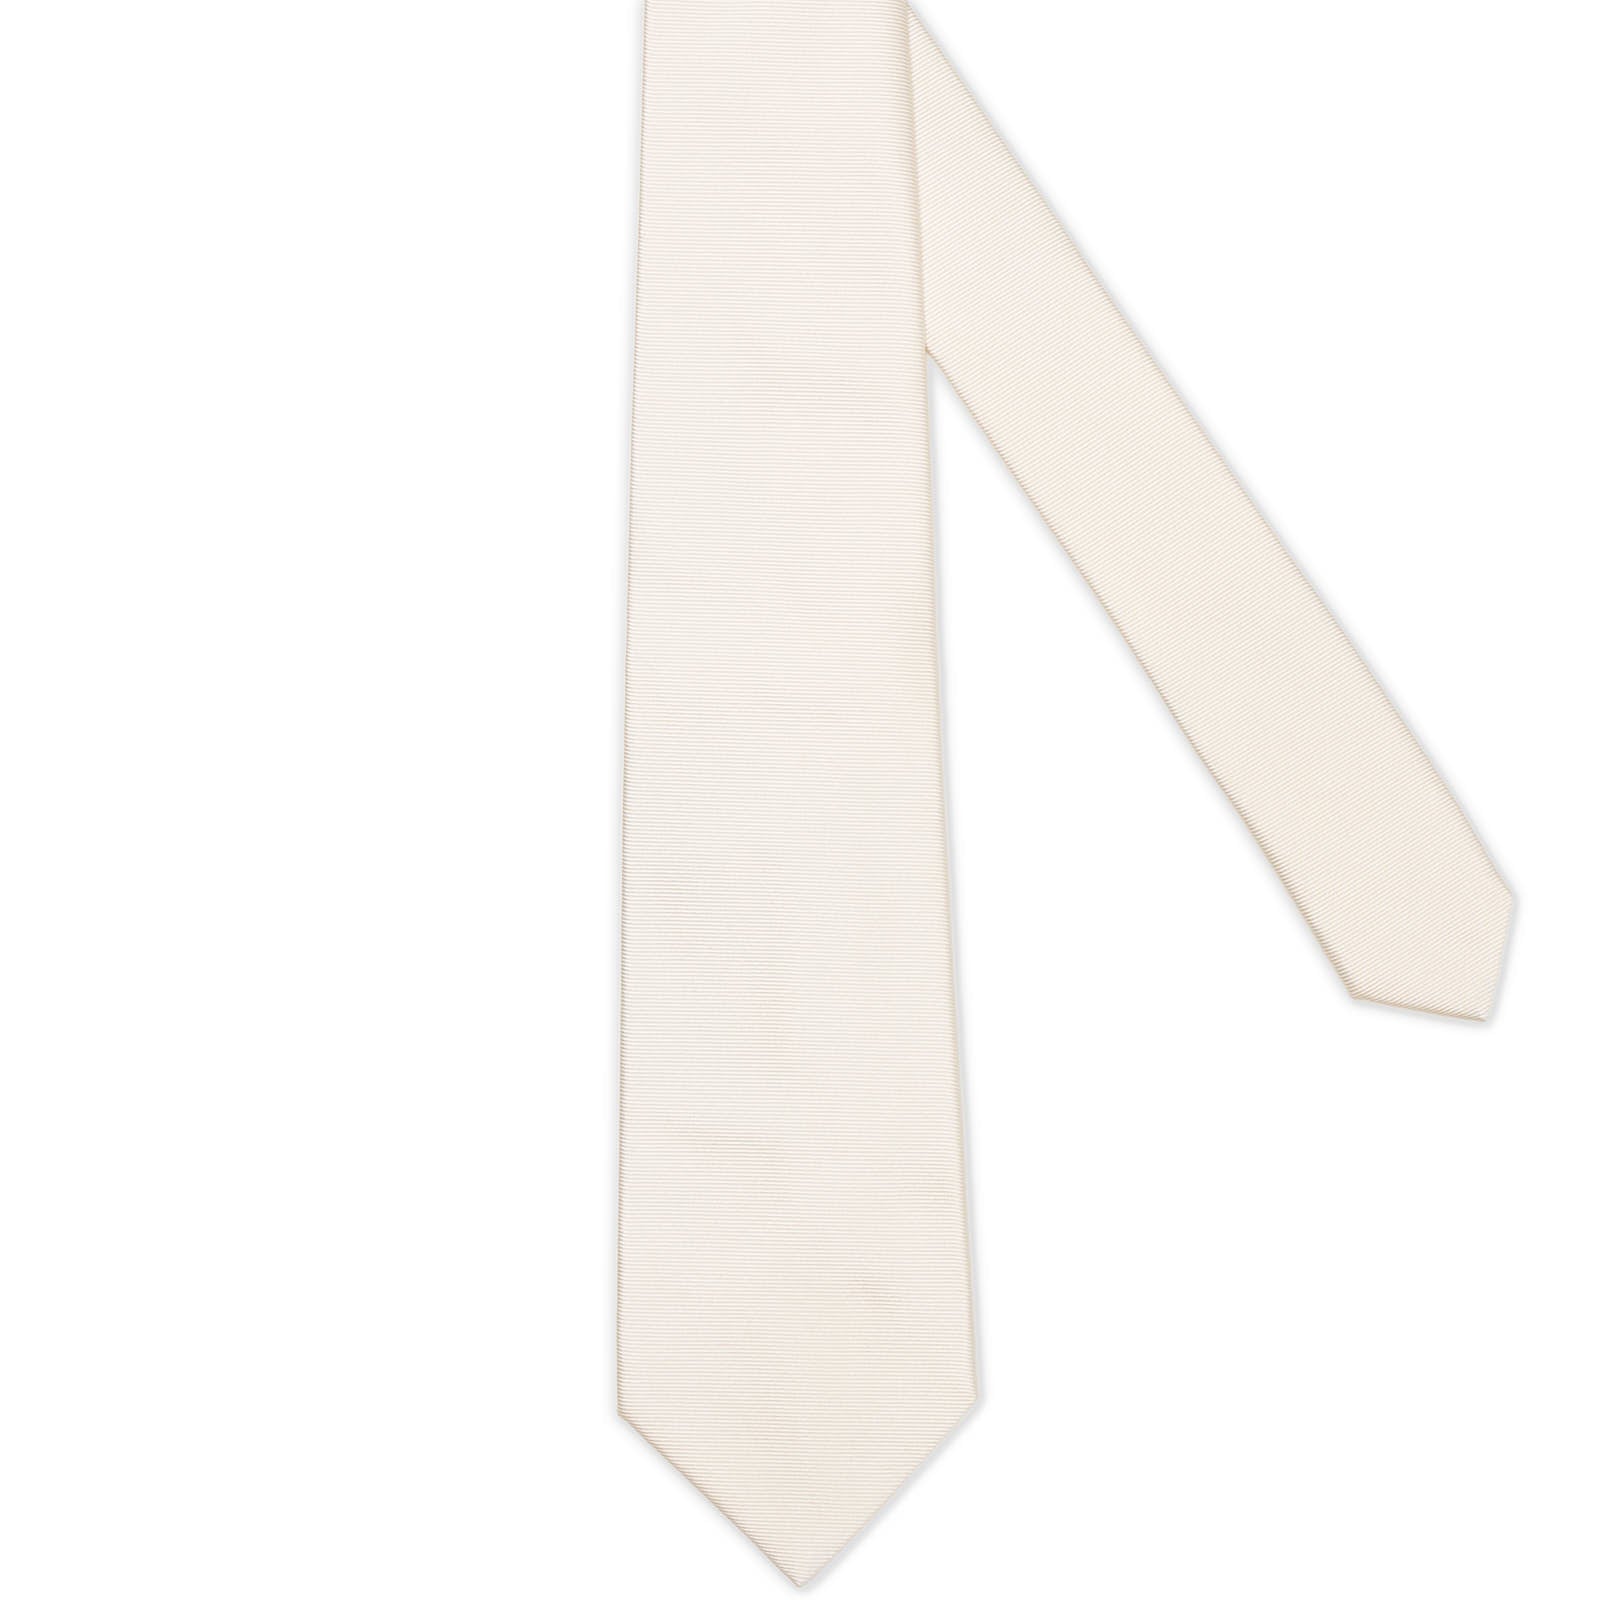 MATTABISCH White Horizontal Striped Silk Tie NEW